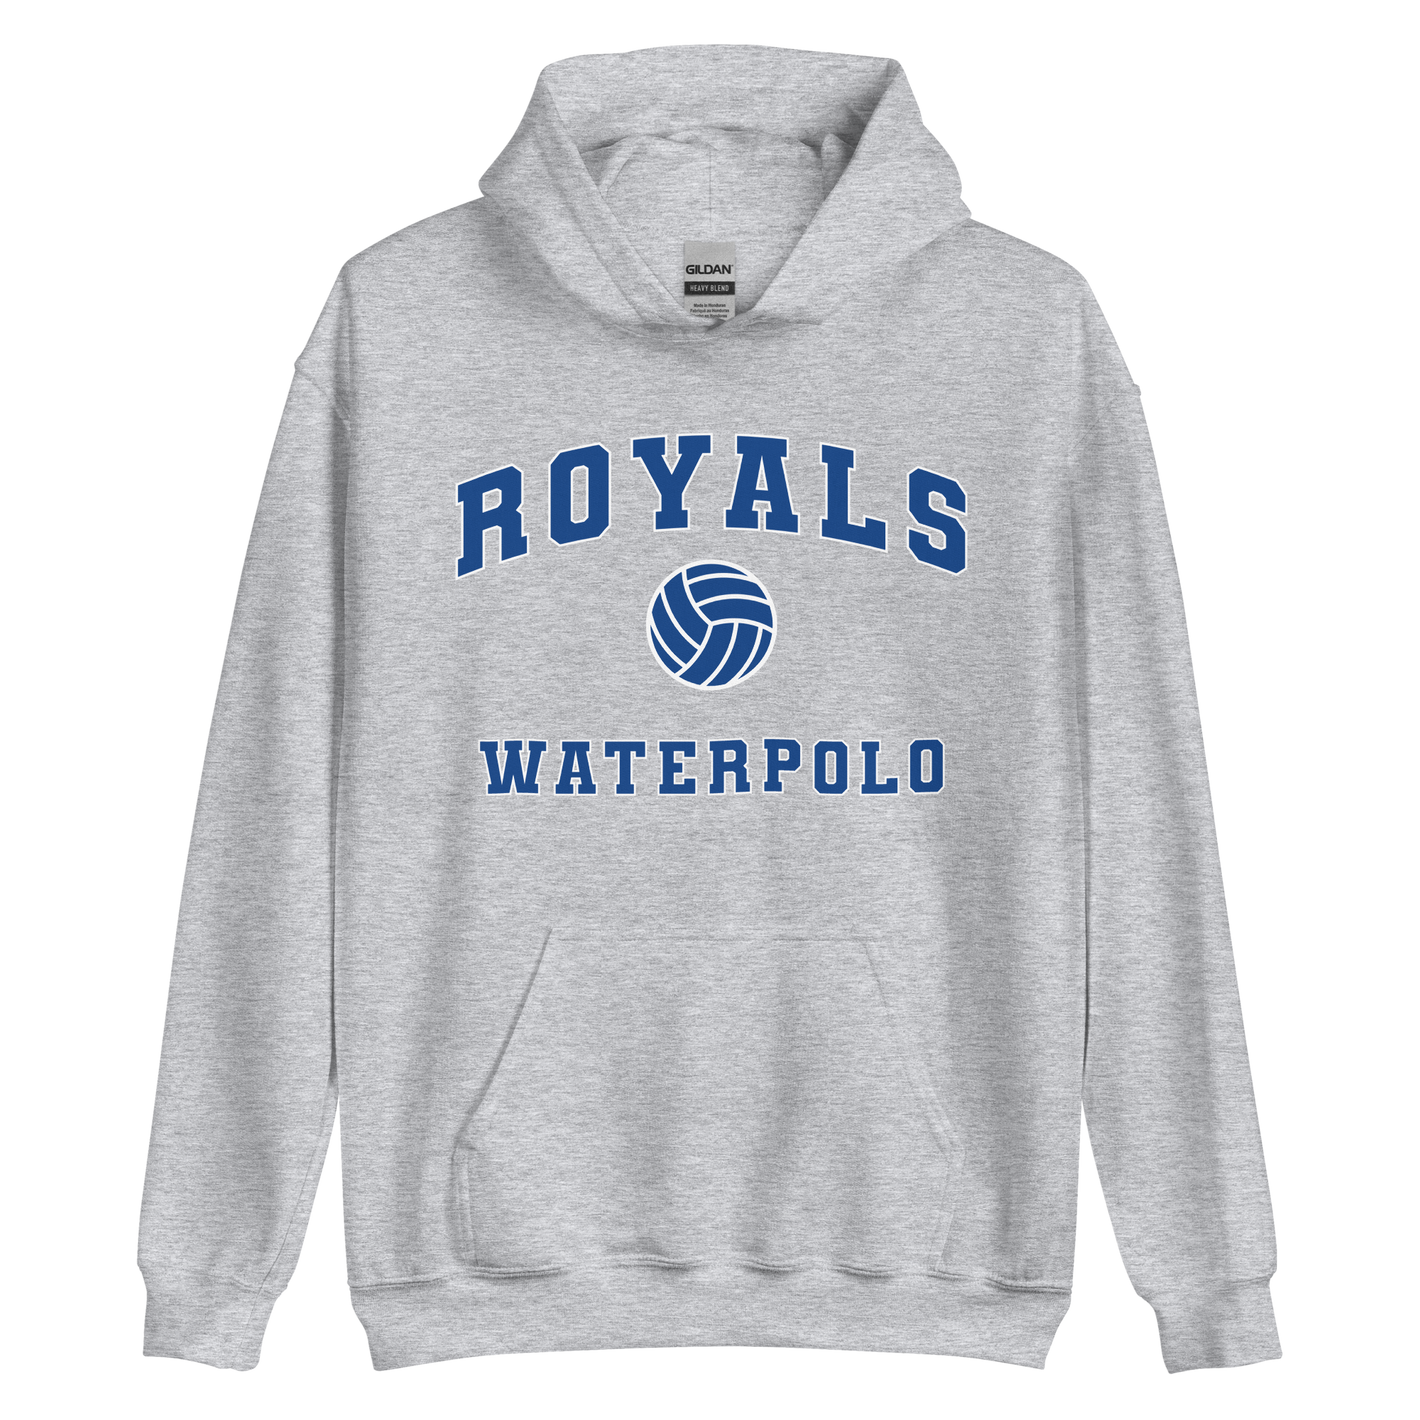 Royals Waterpolo Unisex Hoodie